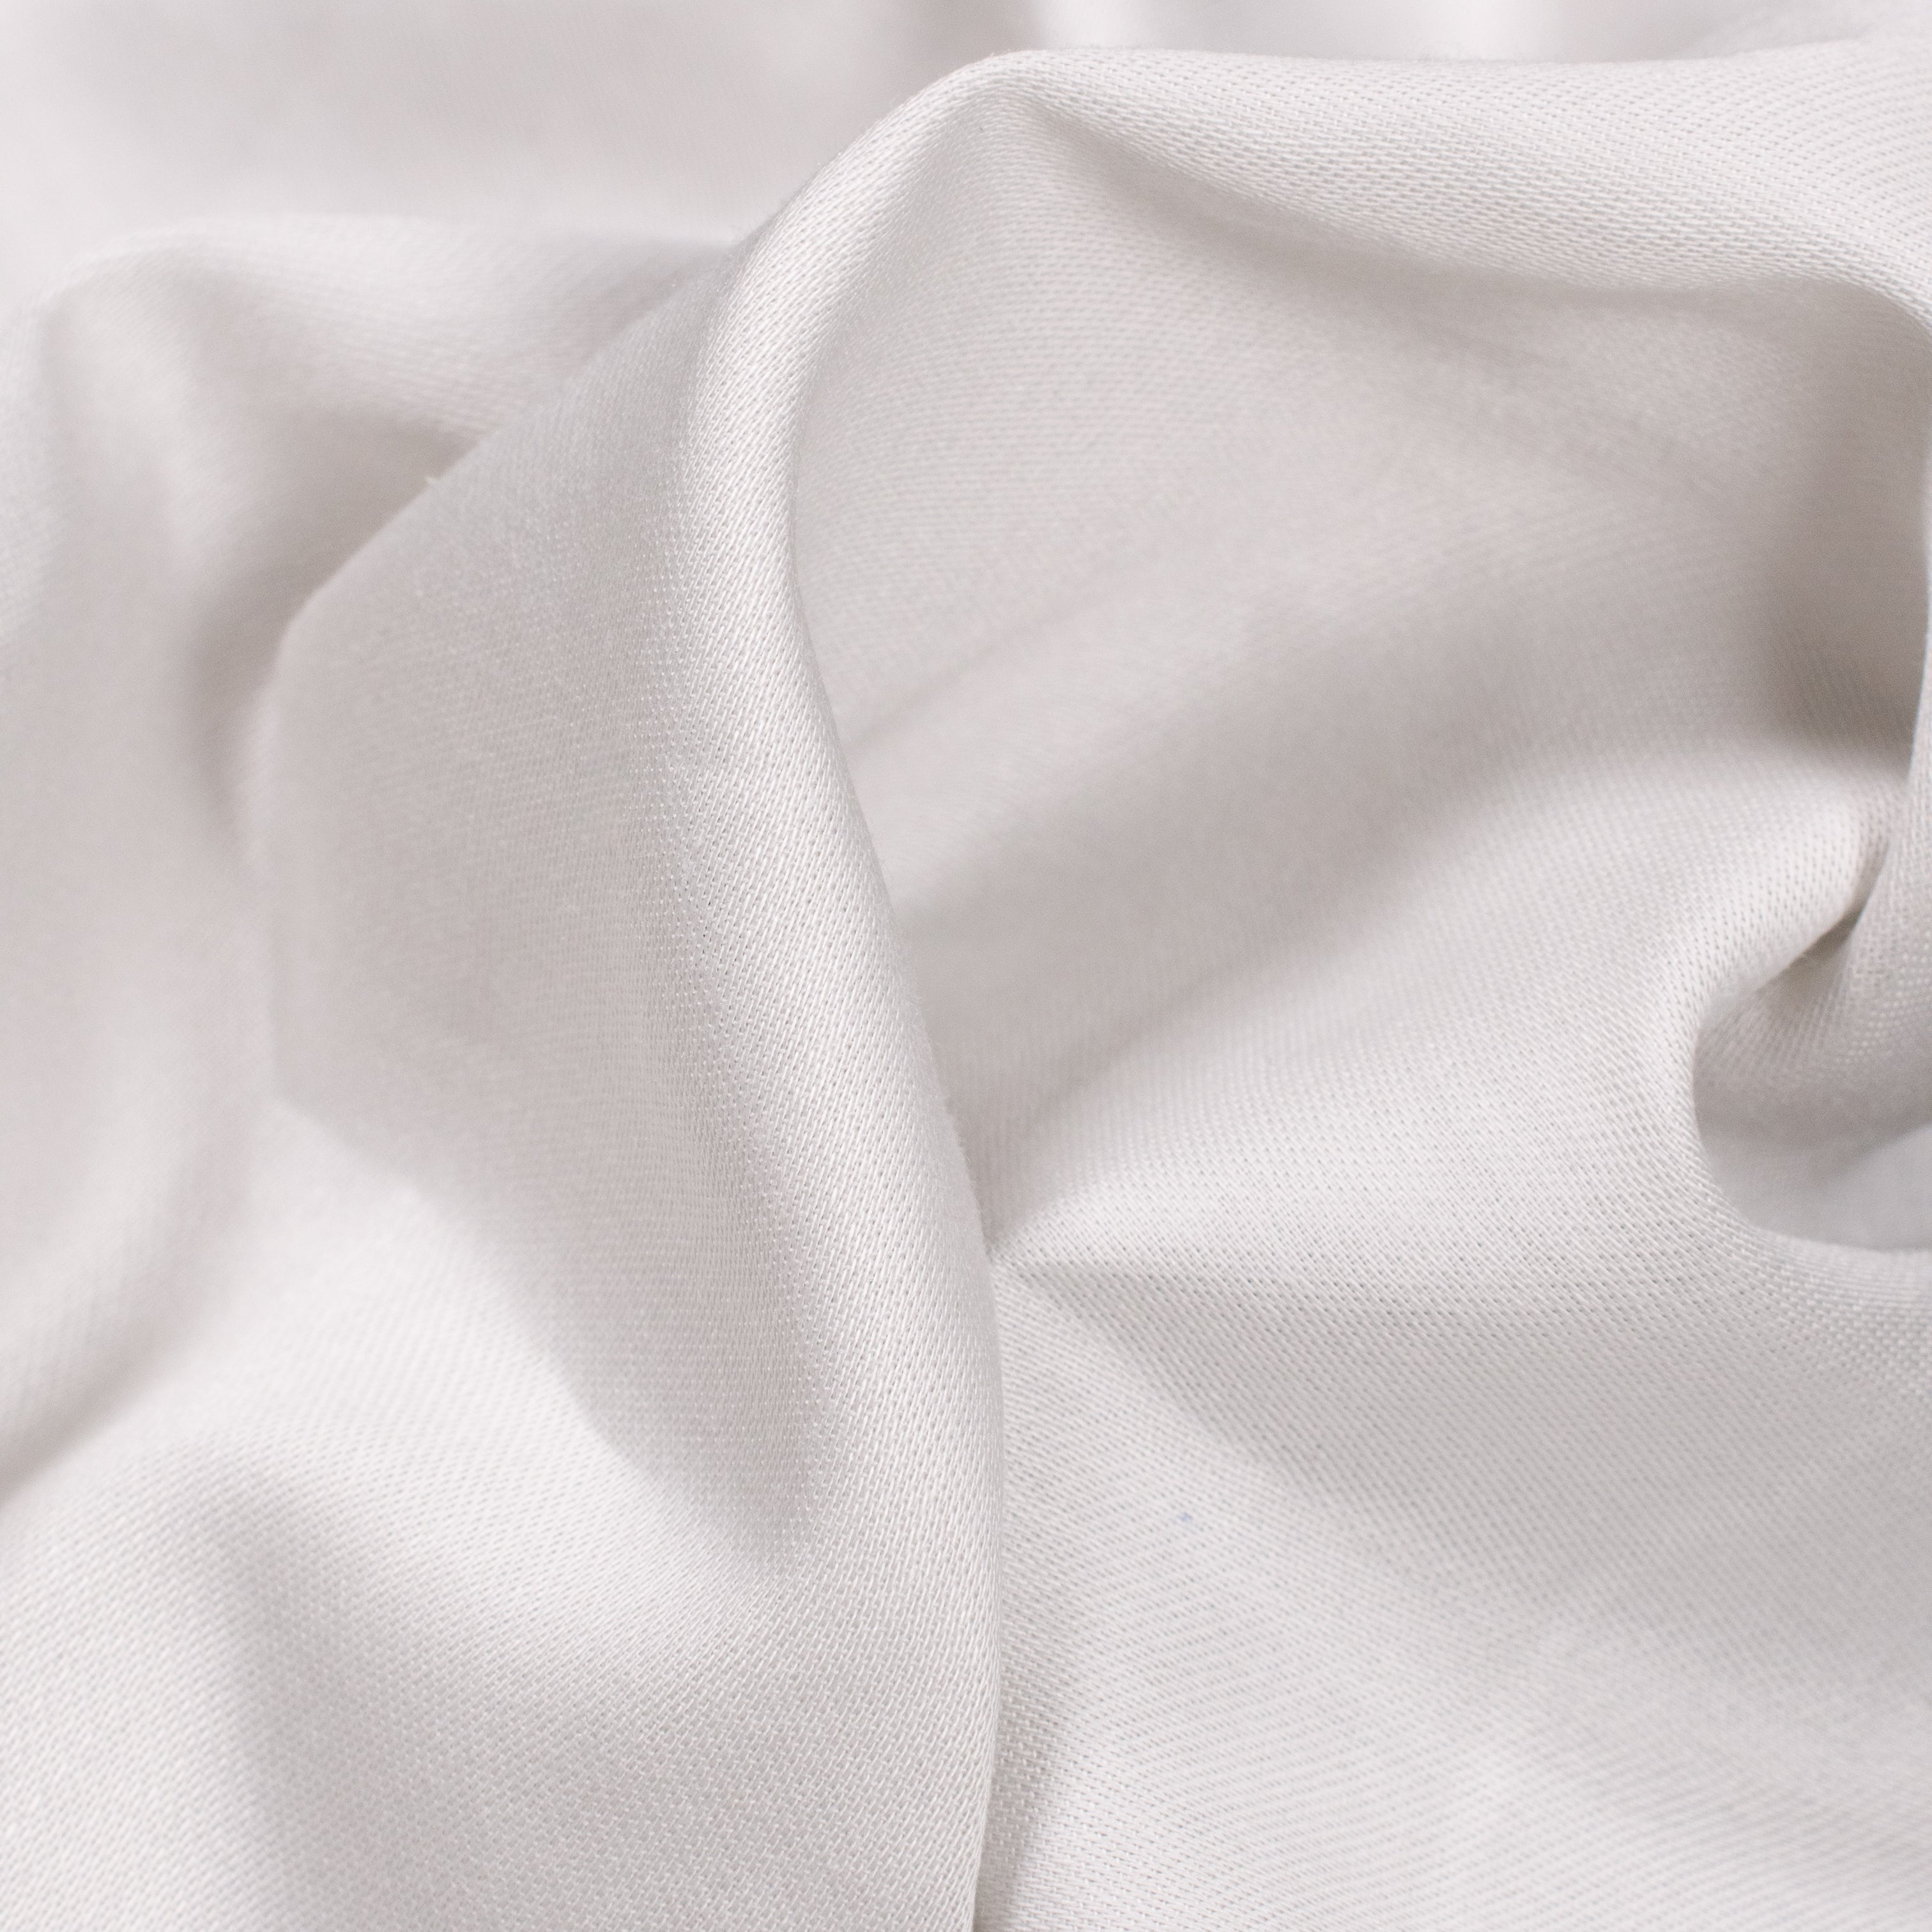 Kitelinens Stay-Tucked Cotton Sateen Sheets